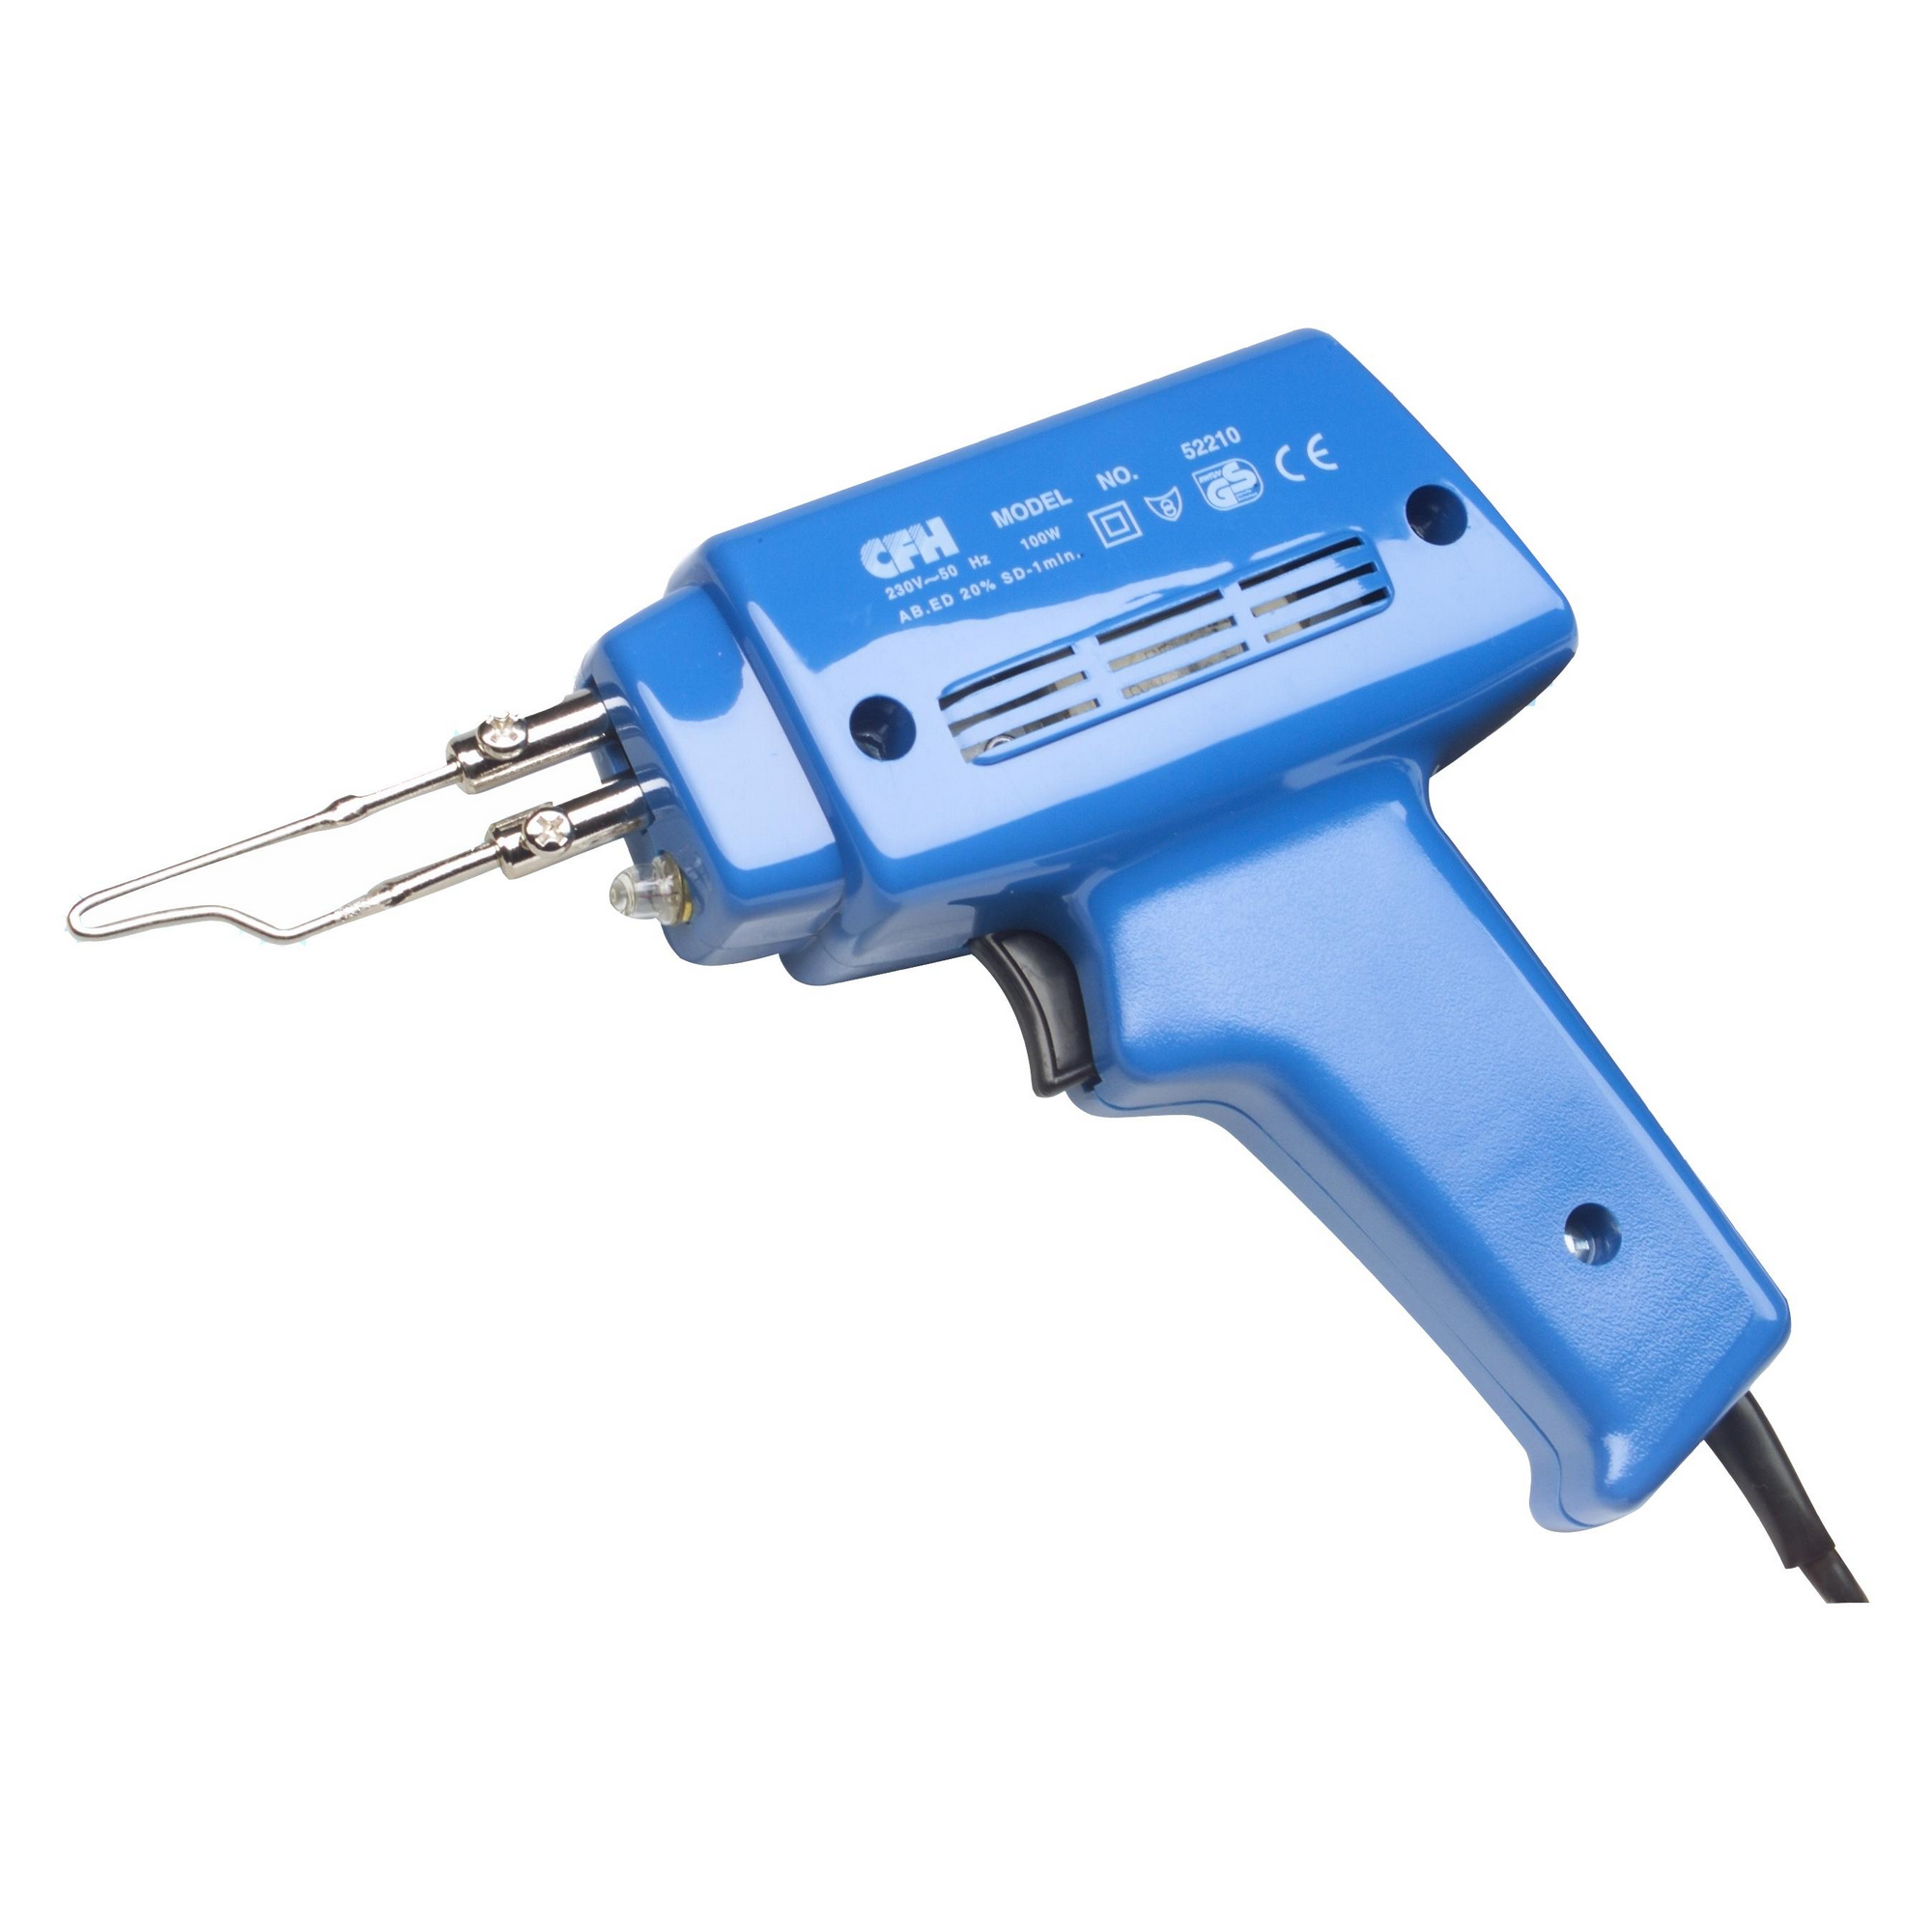 Elektrolötpistole 'E 100' blau 100 W, 300 °C + product picture